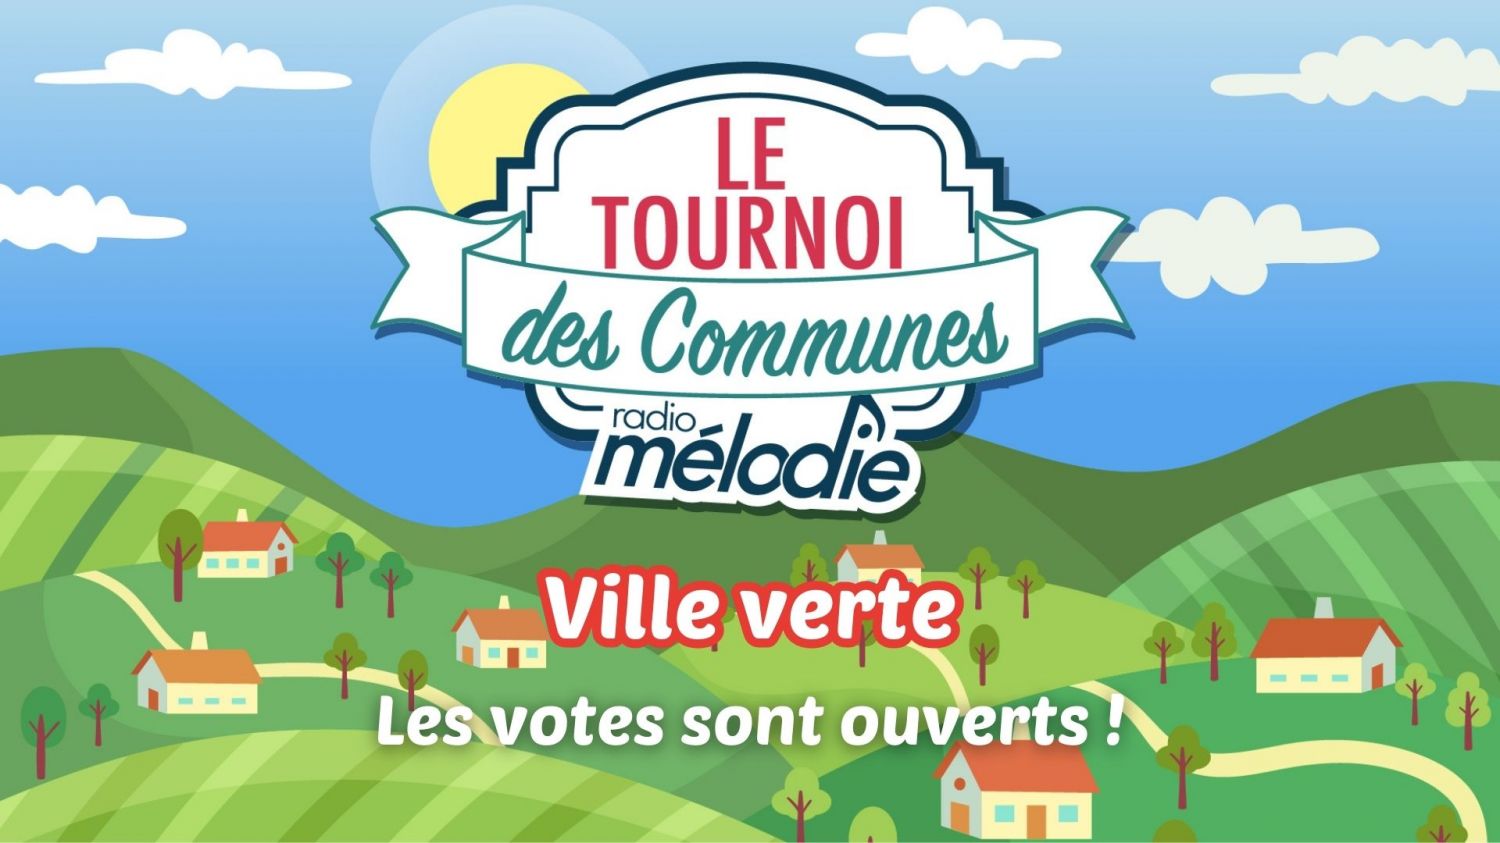 Villes vertes - Les votes sont ouverts pour le tournoi des communes 